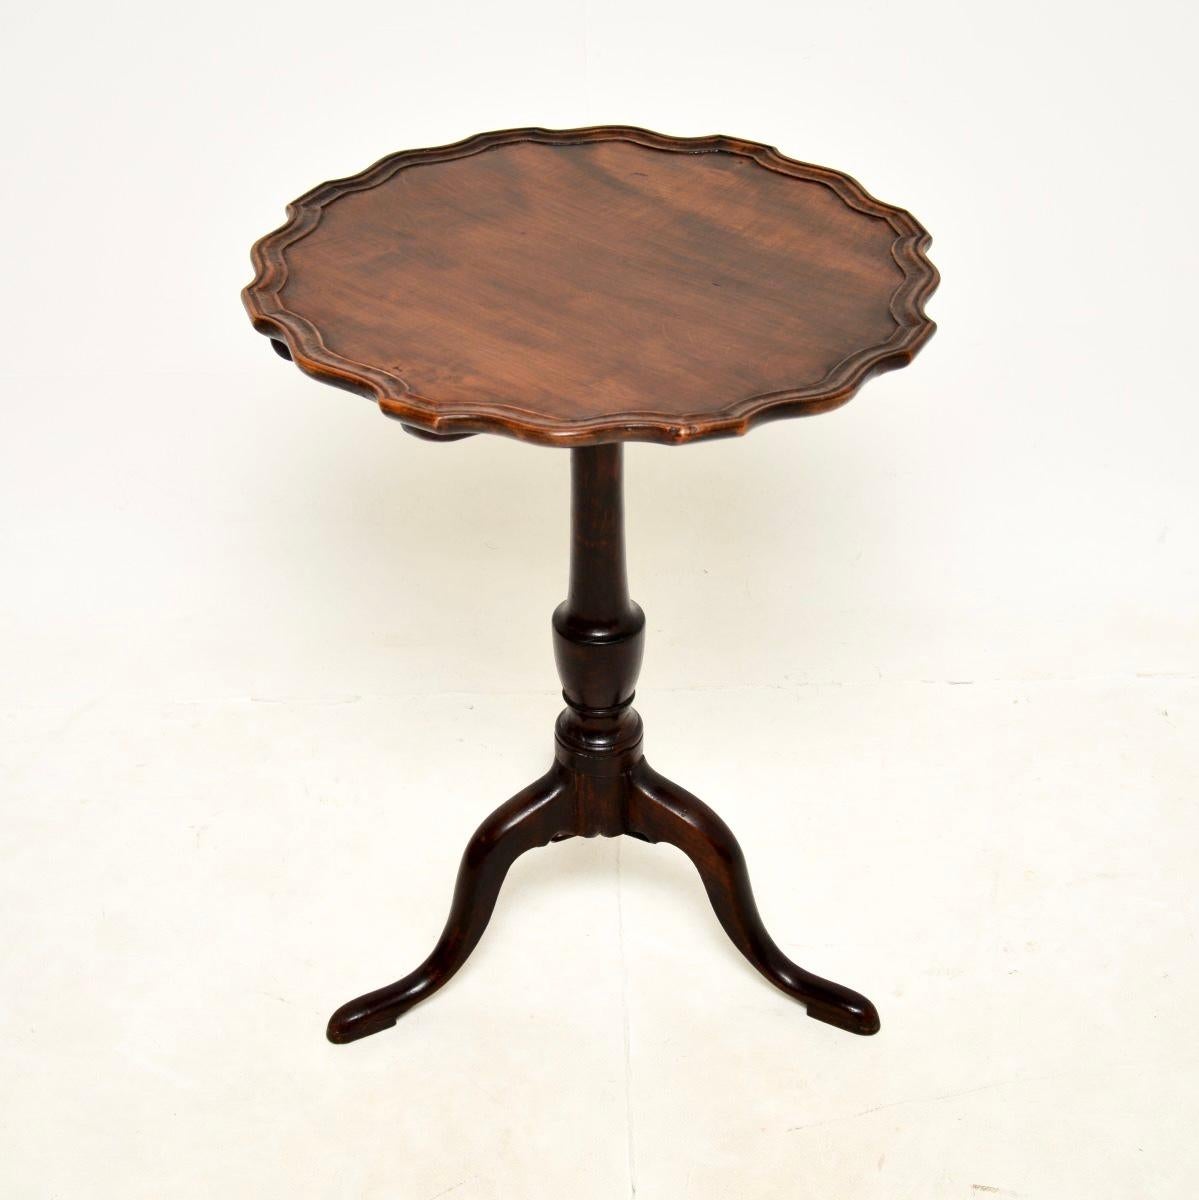 Une charmante table d'appoint ancienne à plateau basculant de style géorgien, très bien réalisée. Fabriqué en Angleterre, il date de la période 1790-1810.

Il est de très bonne qualité, le dessus a un bord de pâte à tarte surélevé et peut être